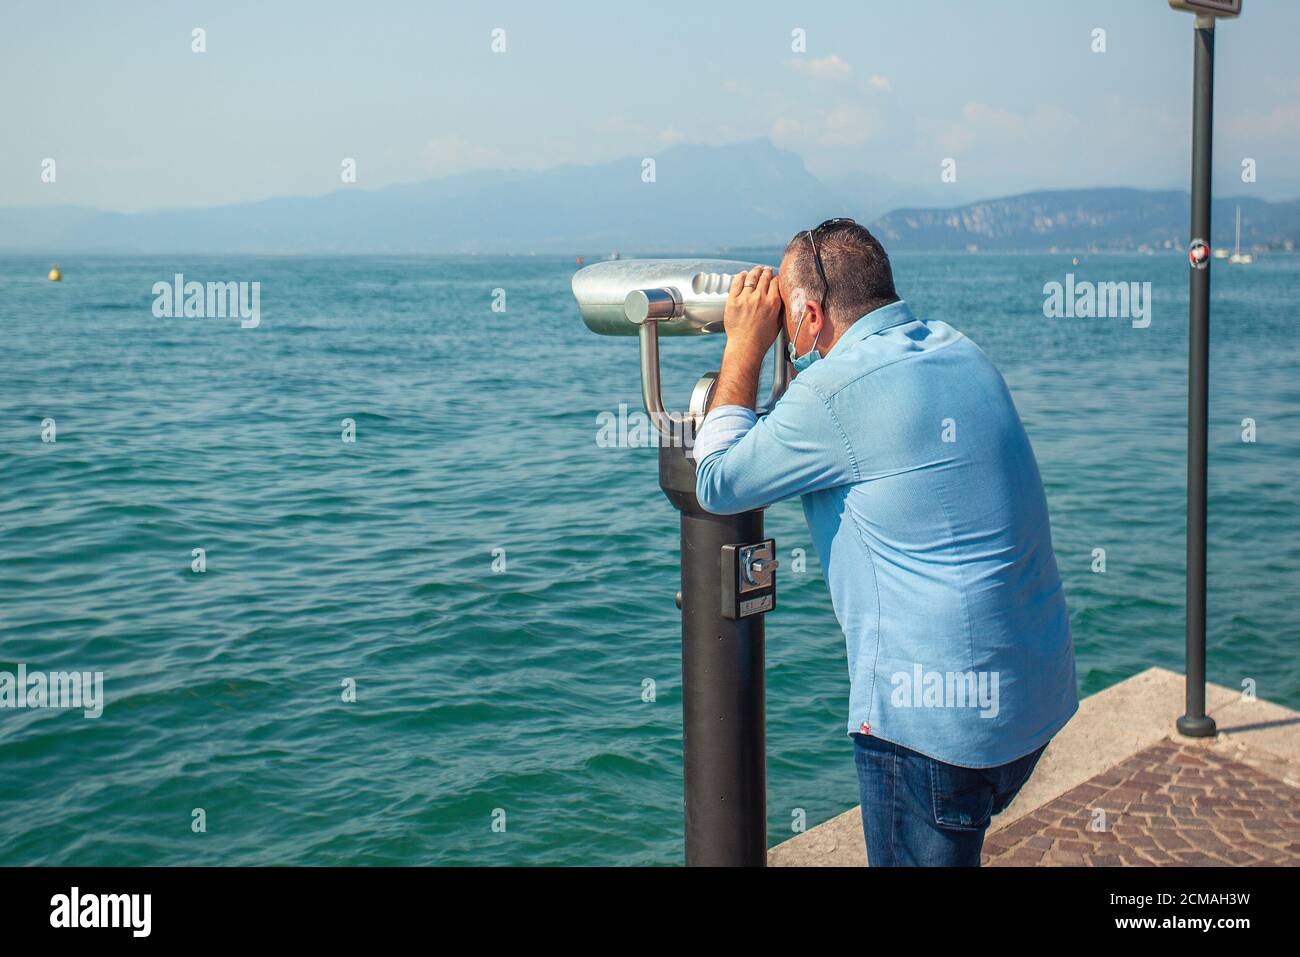 Man looks at binoculars on Garda Lake Stock Photo